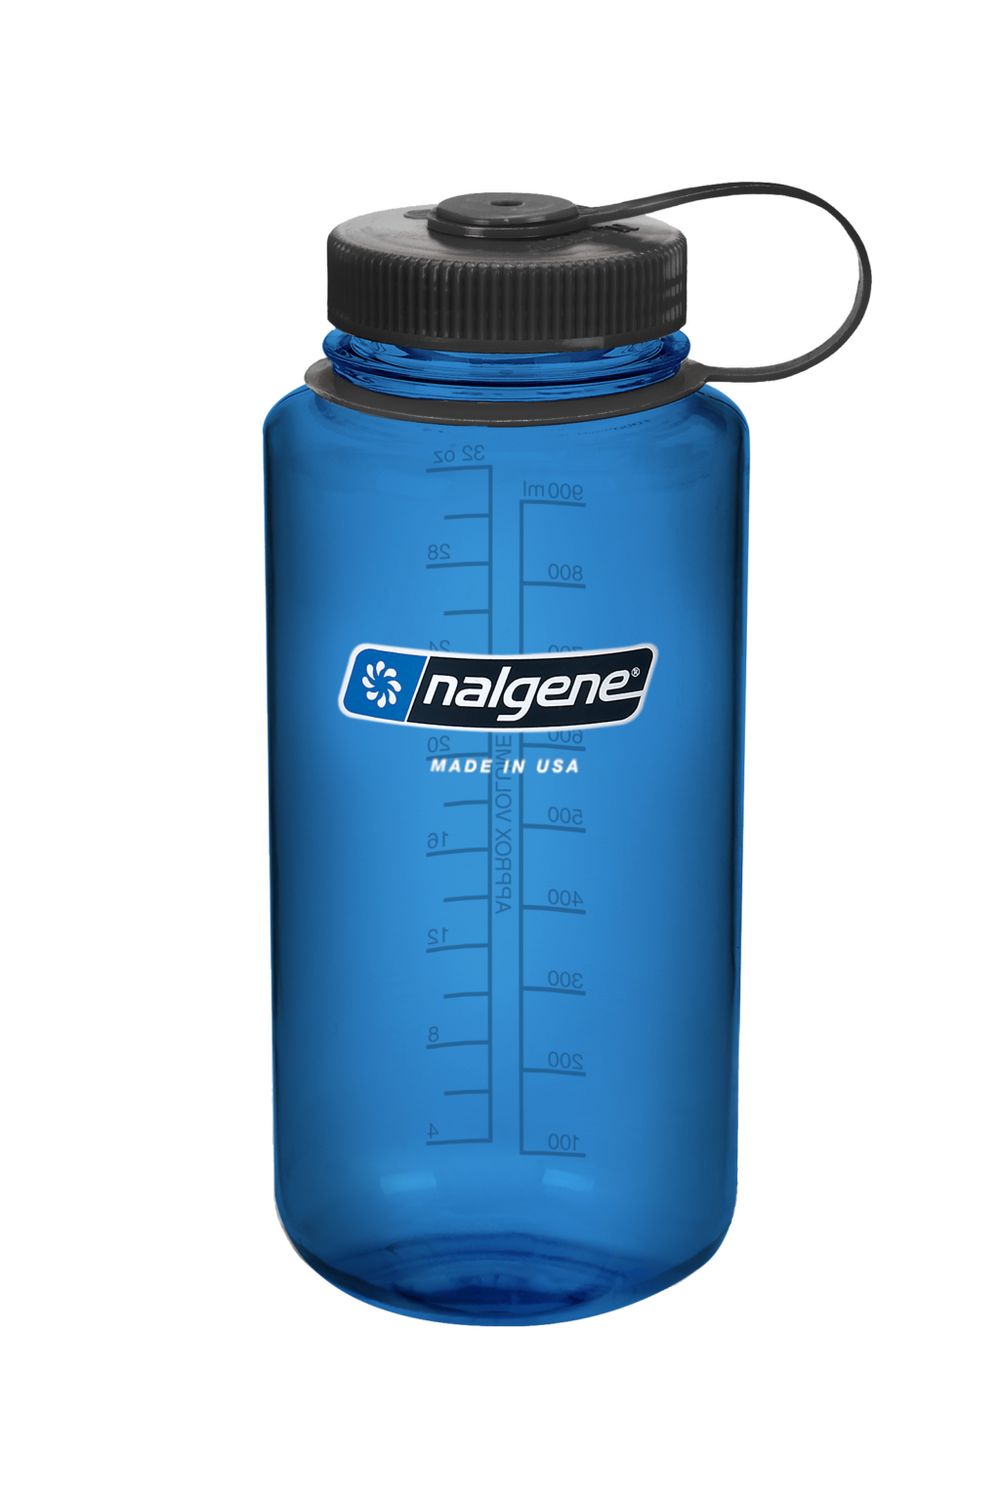 Trockener Behälter Wasserdicht Robuster ABS Kunststoff Flasche Mit Haken 